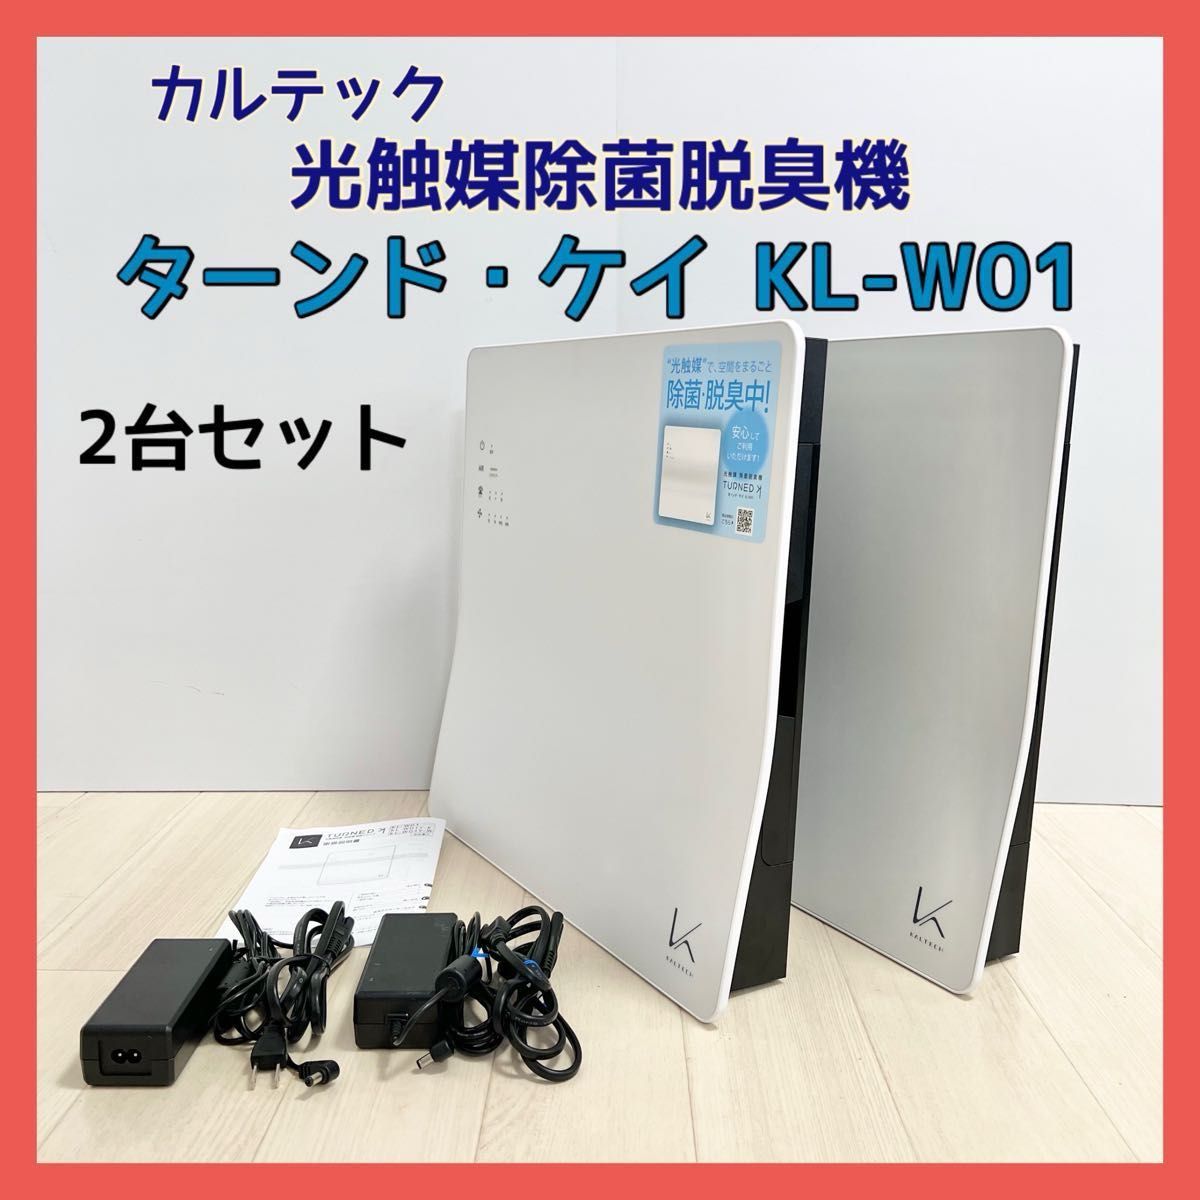 カルテック 光触媒除菌・脱臭機 ターンド・ケイ 壁掛けタイプ KL-W01 2台 空気清浄機